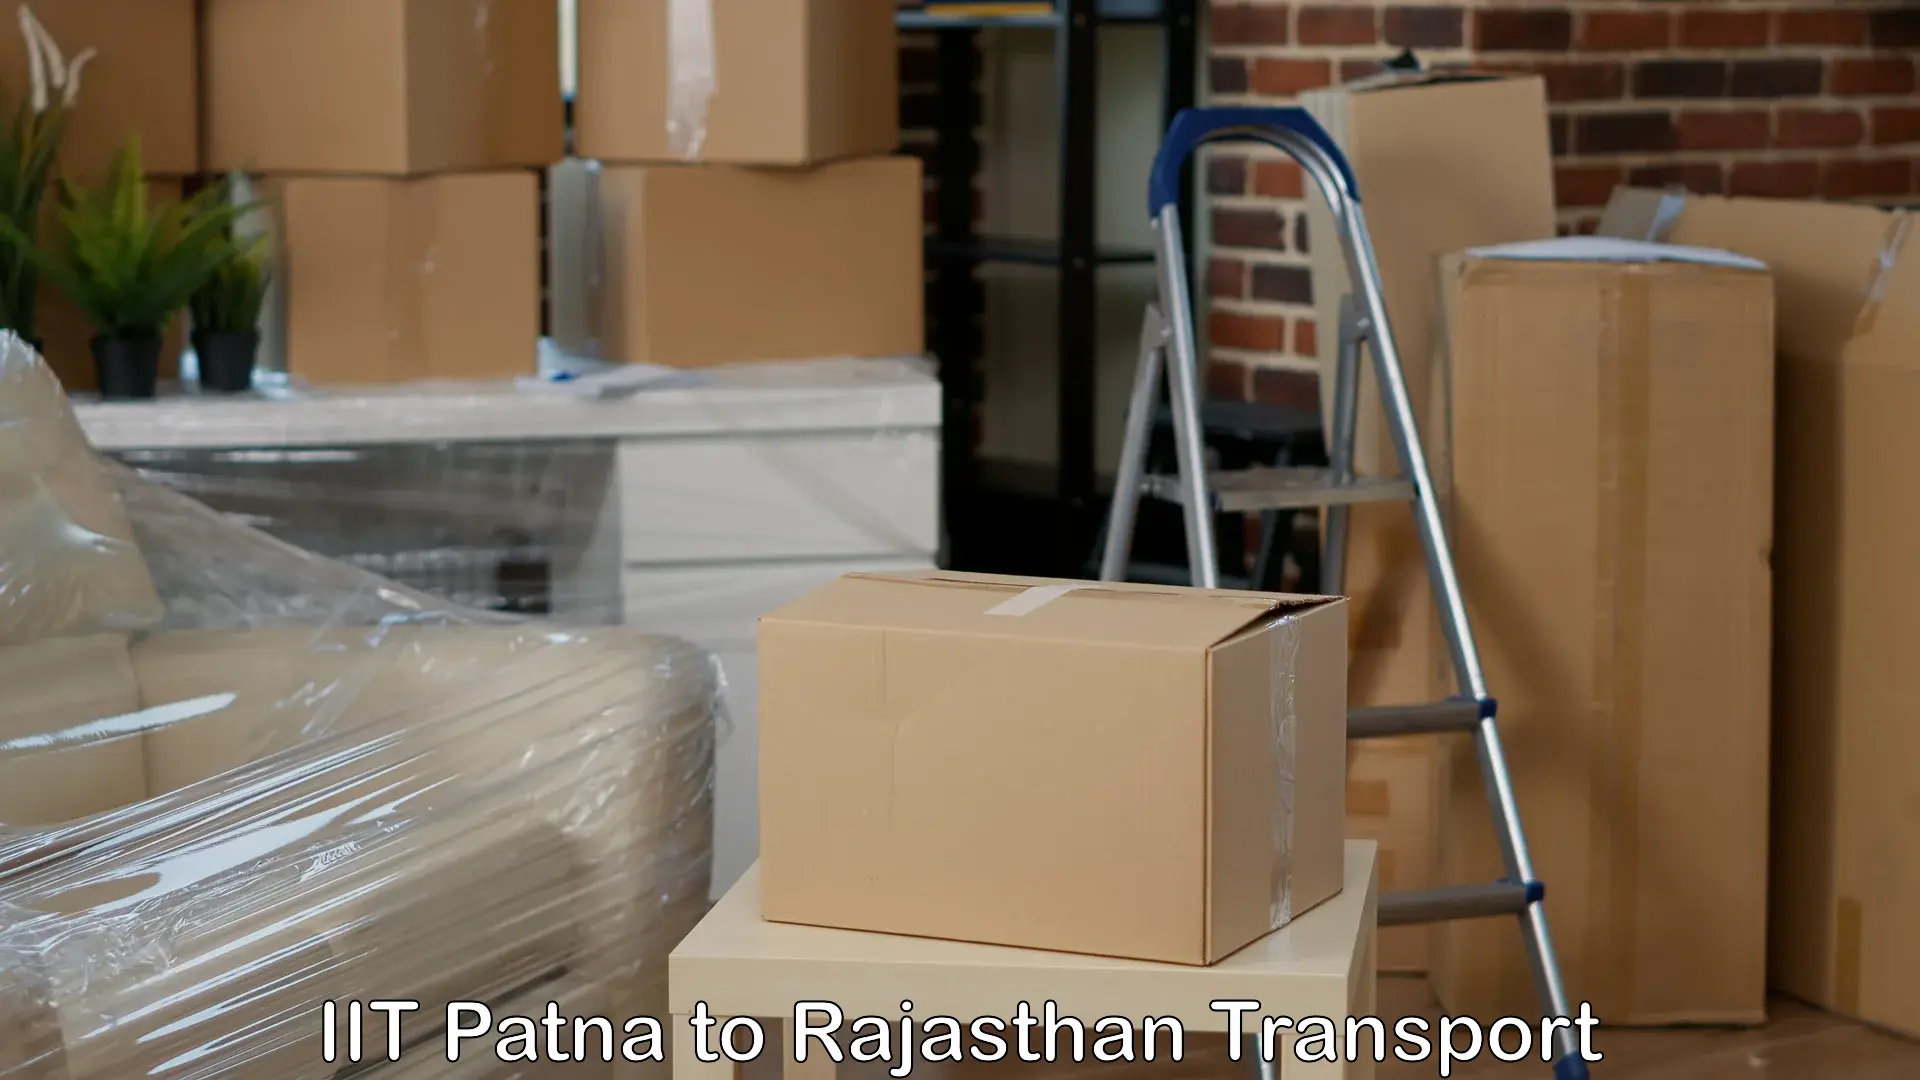 Shipping partner IIT Patna to Kalwar